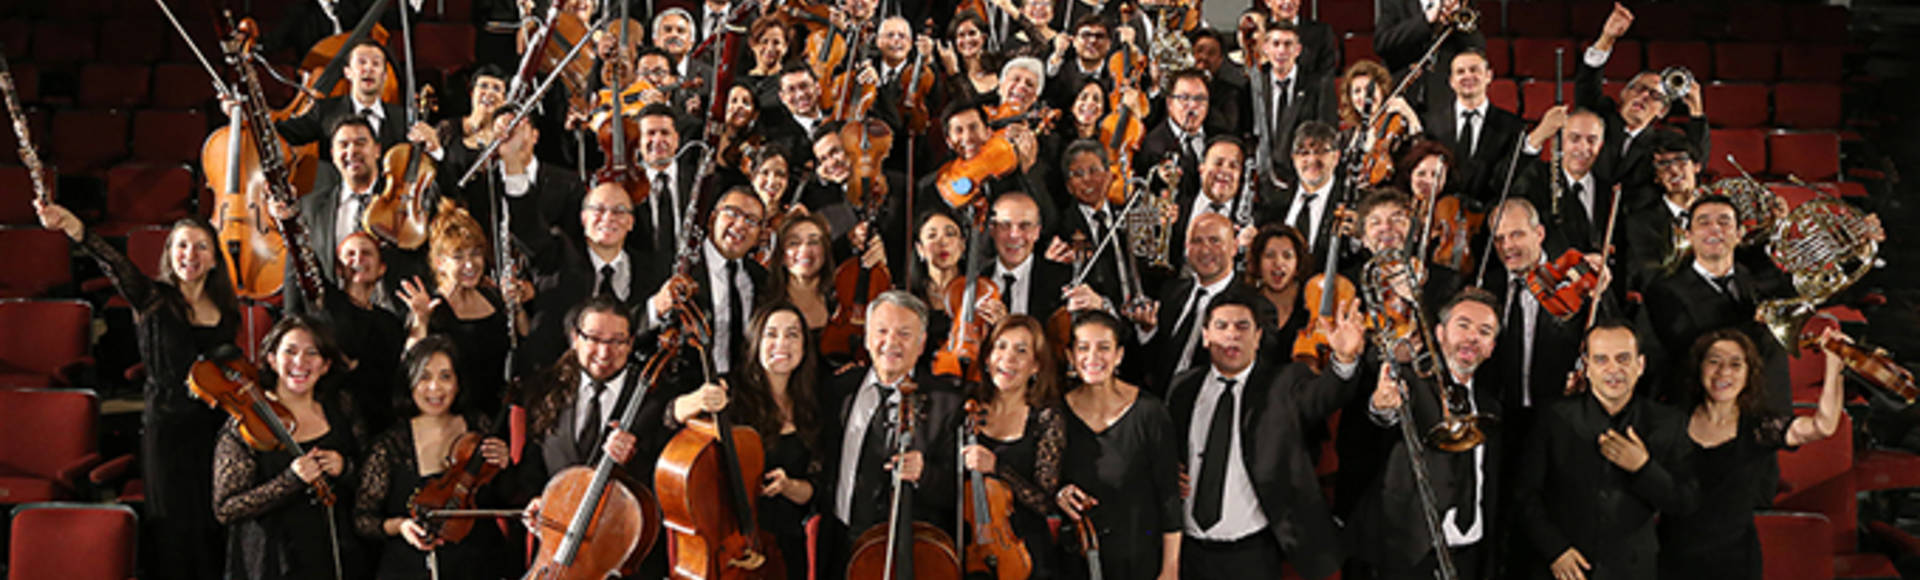 Orquesta Filarmónica de Bogotá - Concierto de Navidad 2018